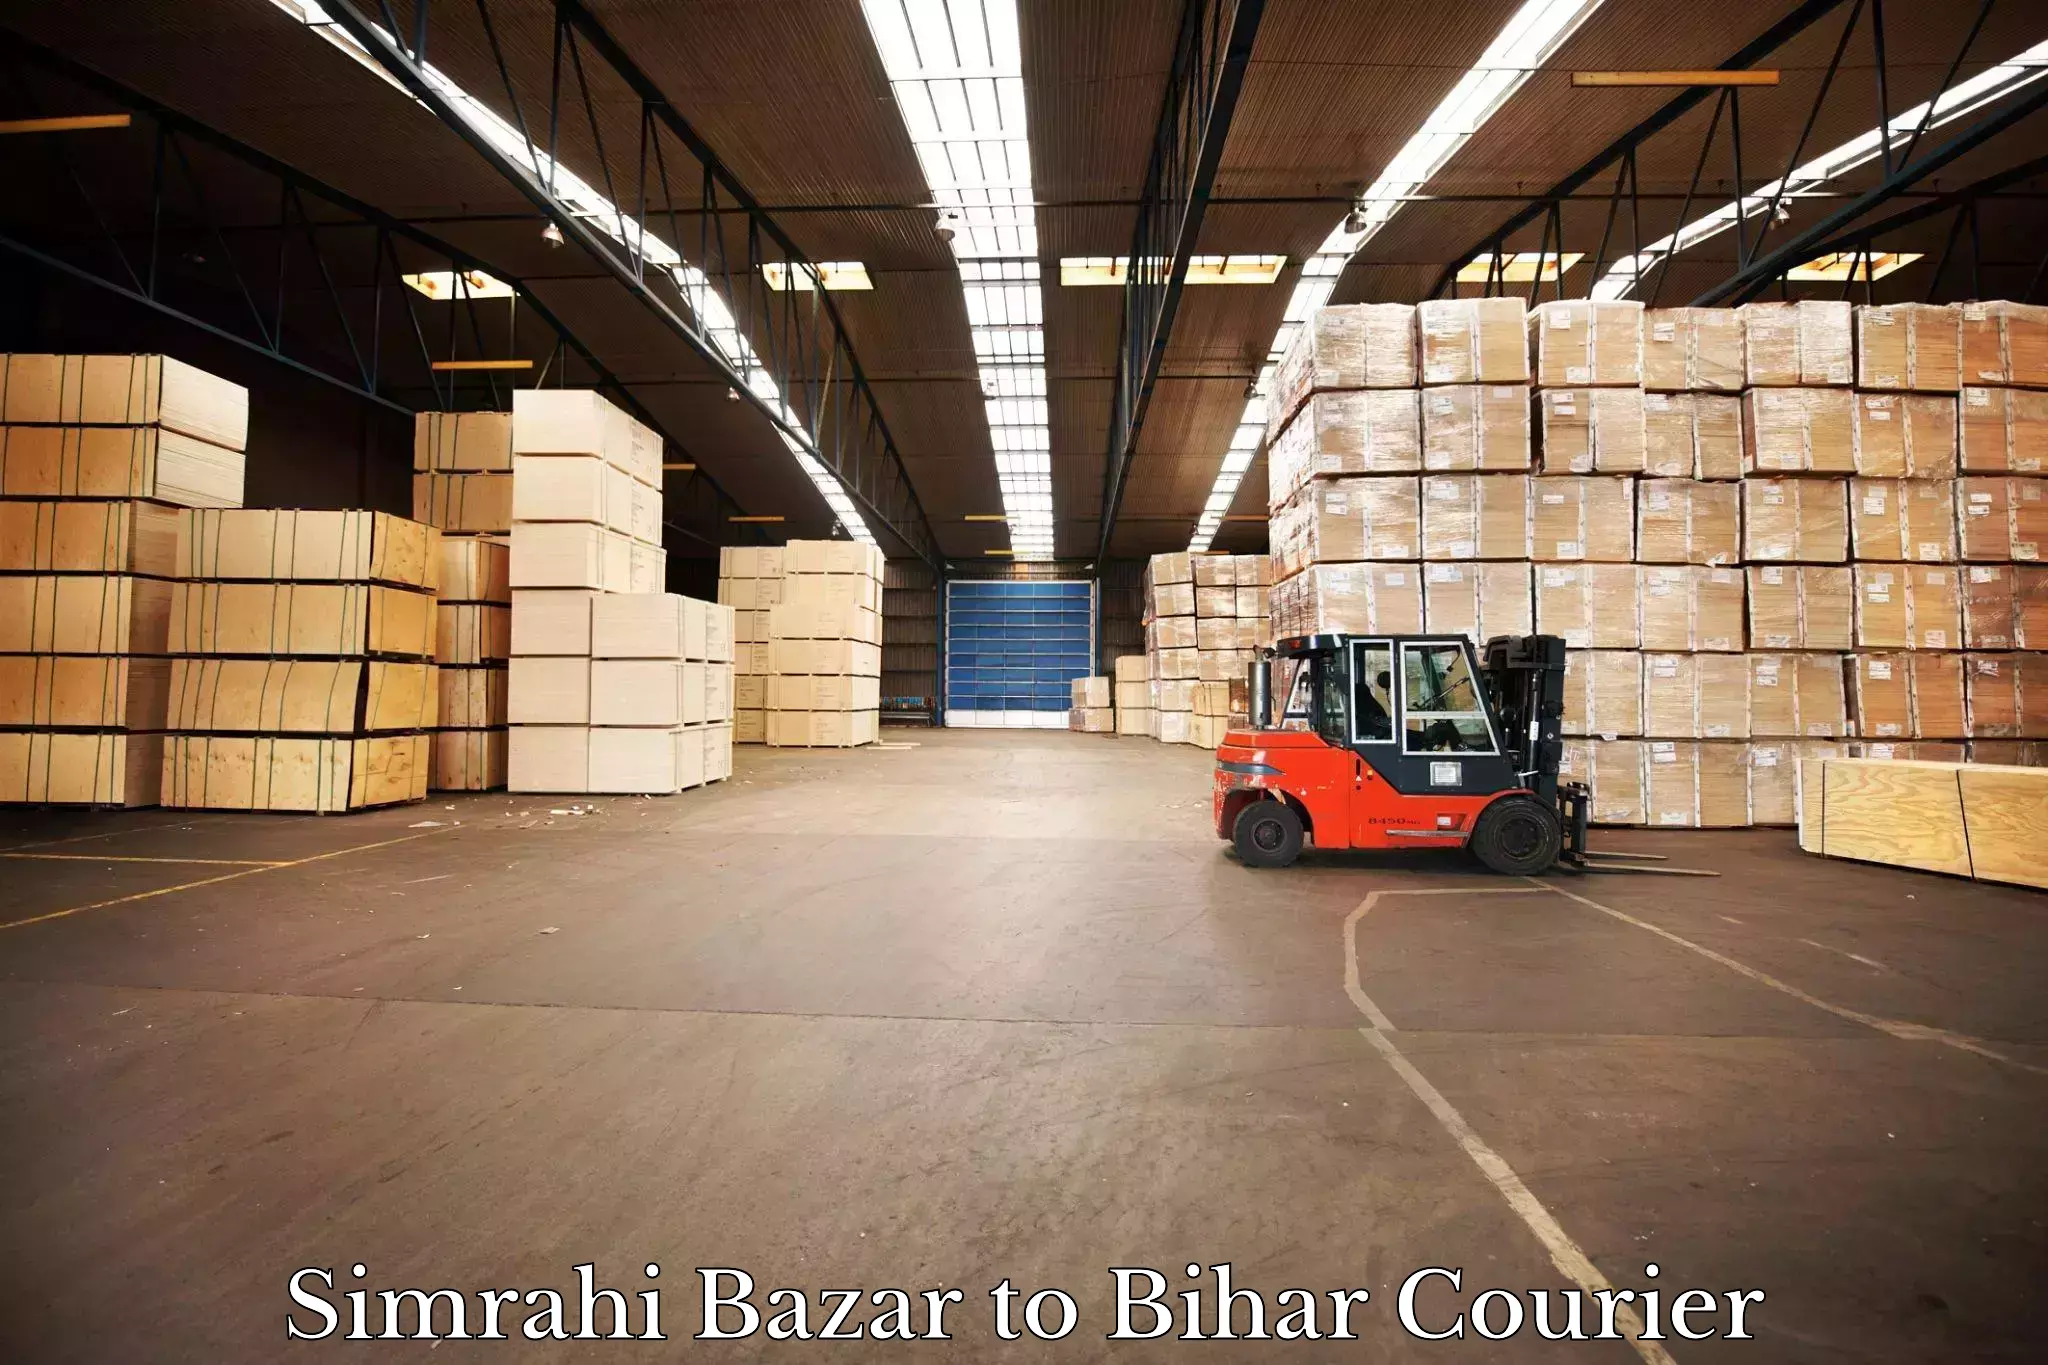 Express mail service Simrahi Bazar to Bihar